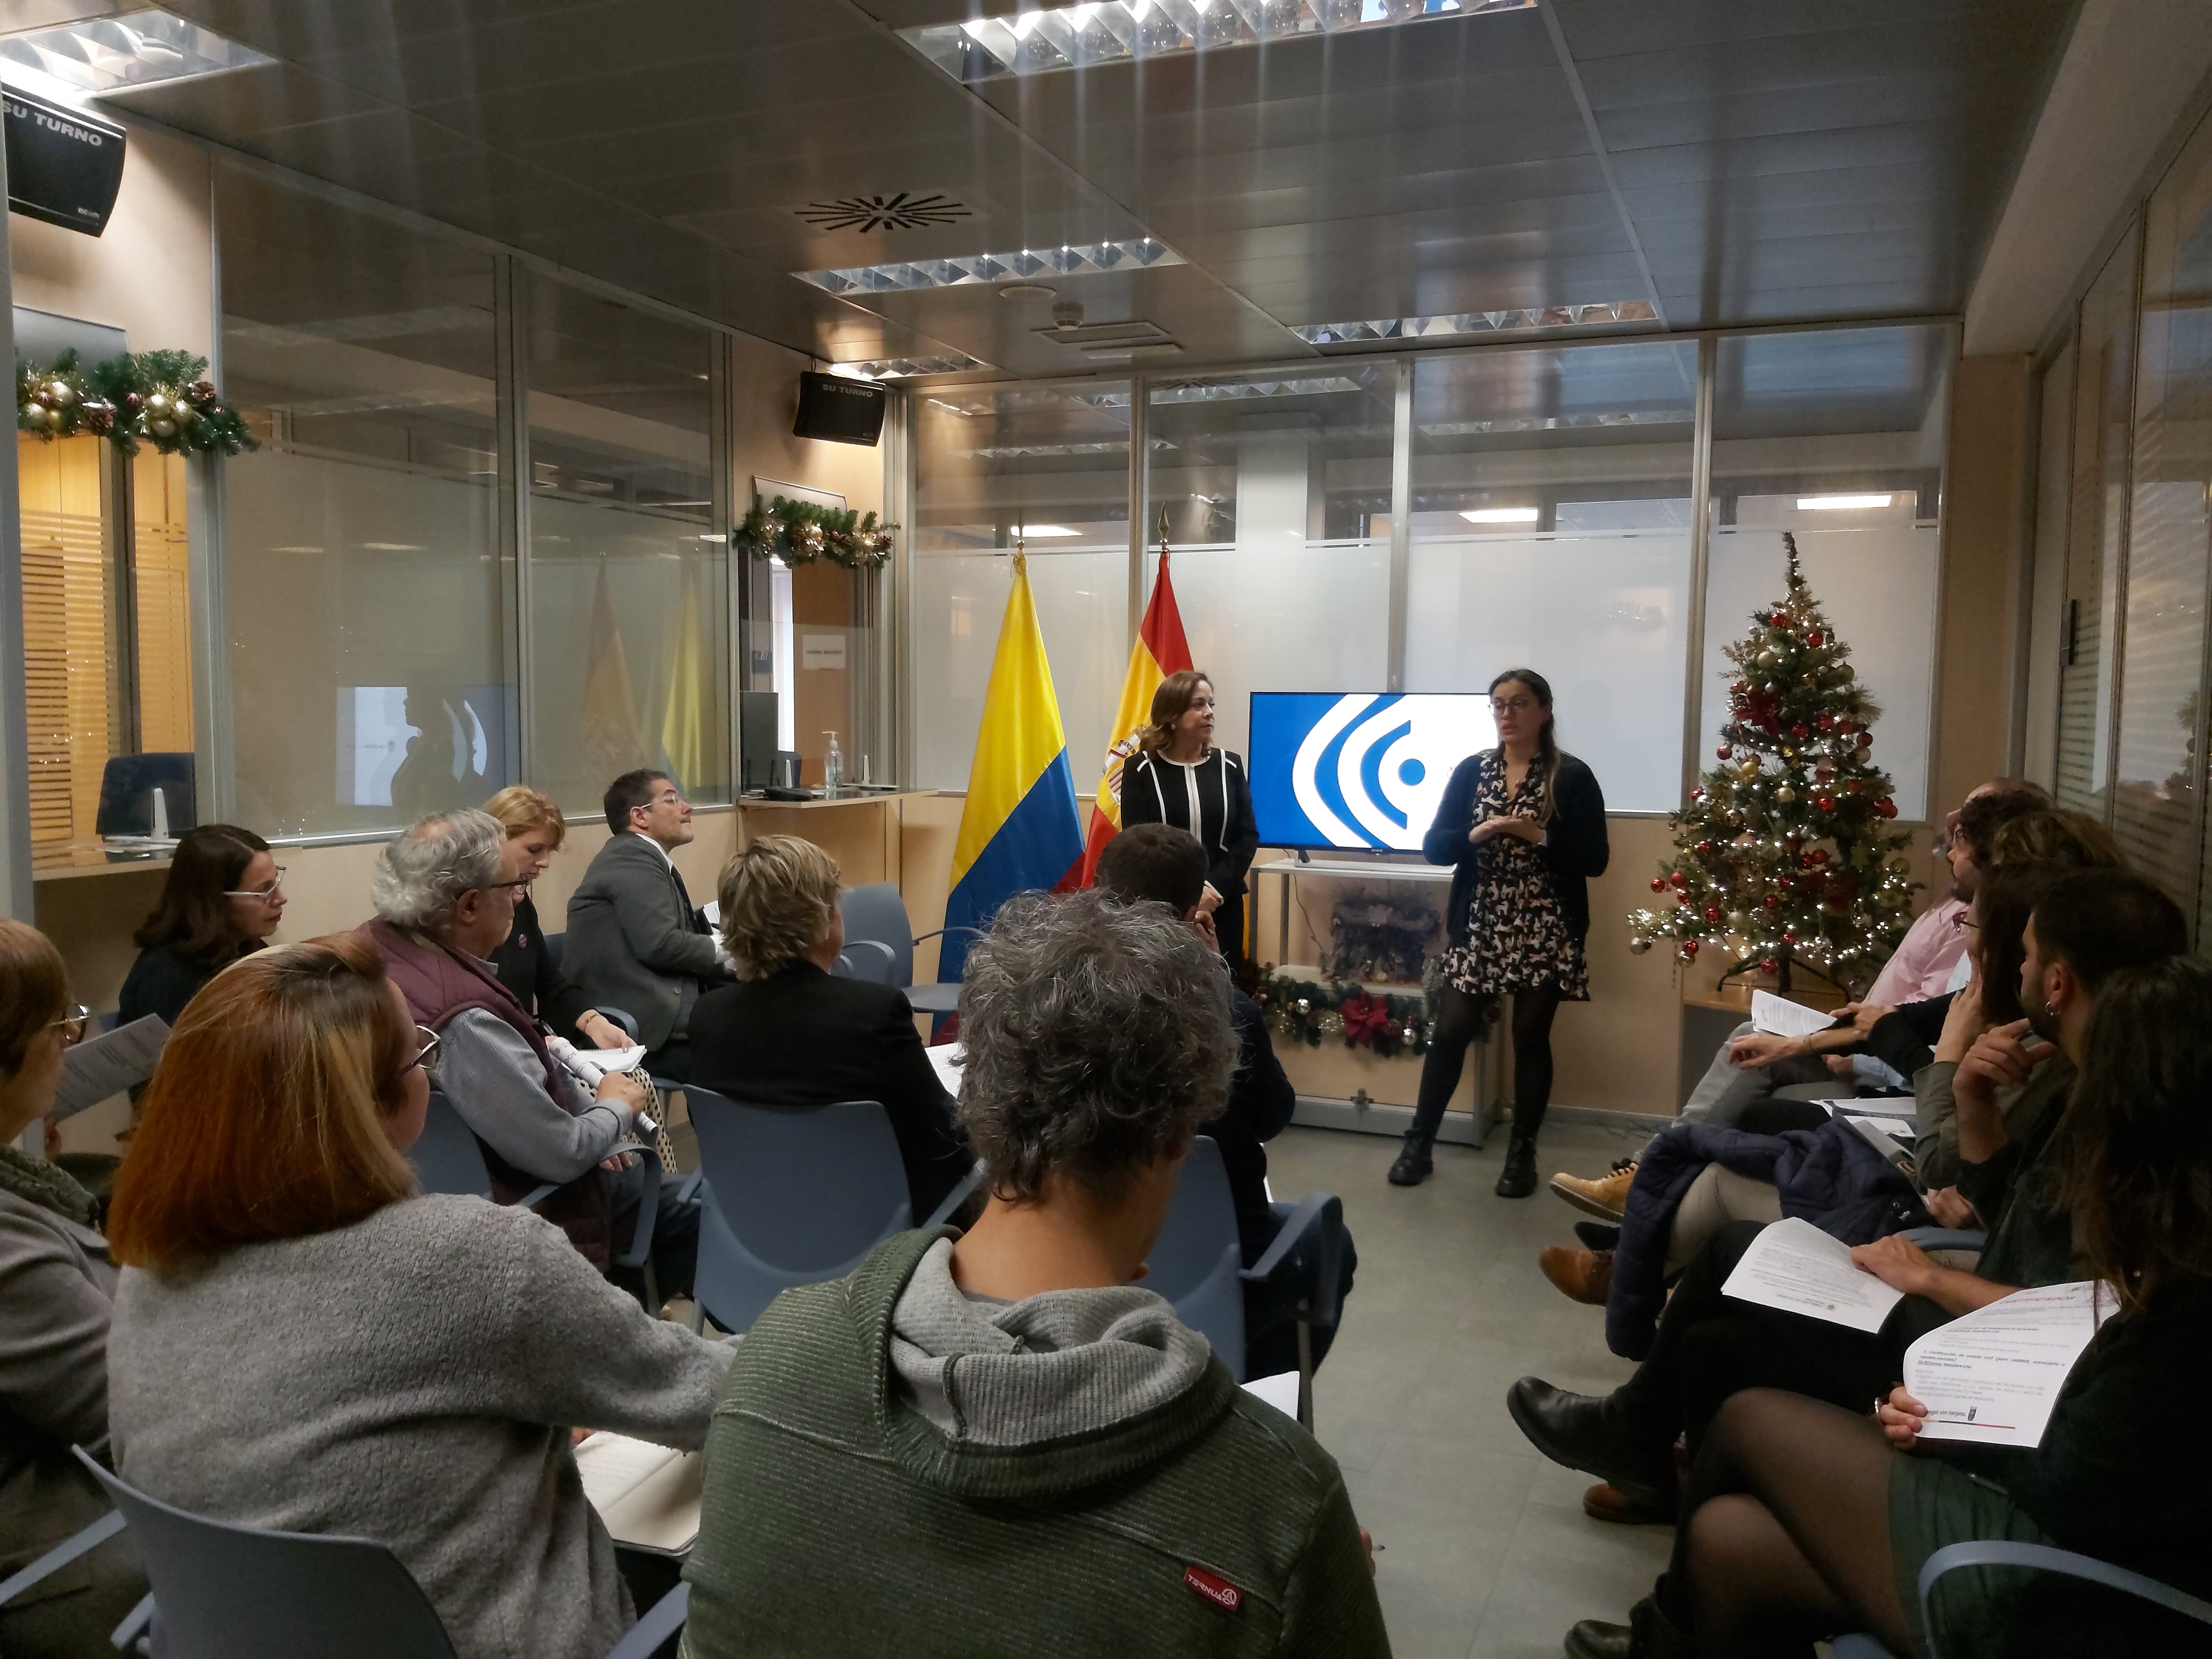 Consulado en Bilbao se reúne con Aholku-Sarea, Red Vasca de Atención Jurídica en materia de Extranjería